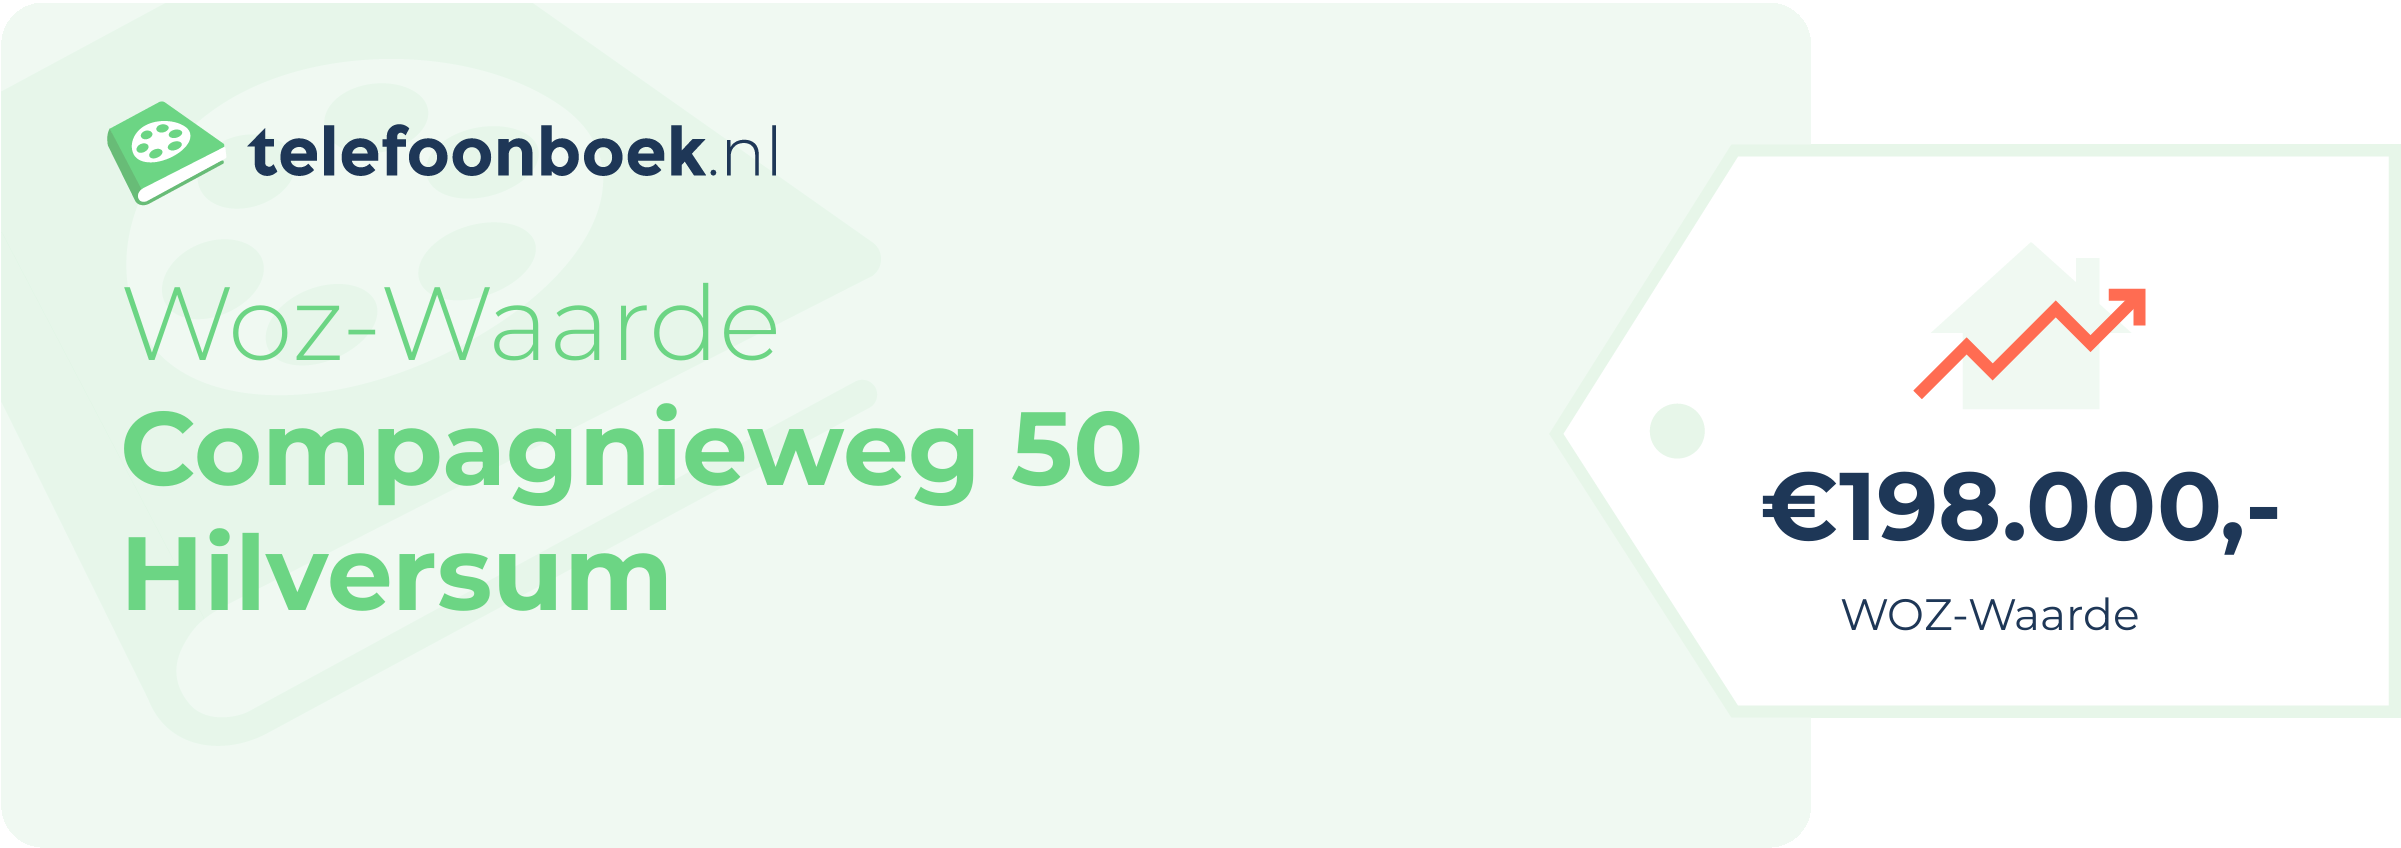 WOZ-waarde Compagnieweg 50 Hilversum